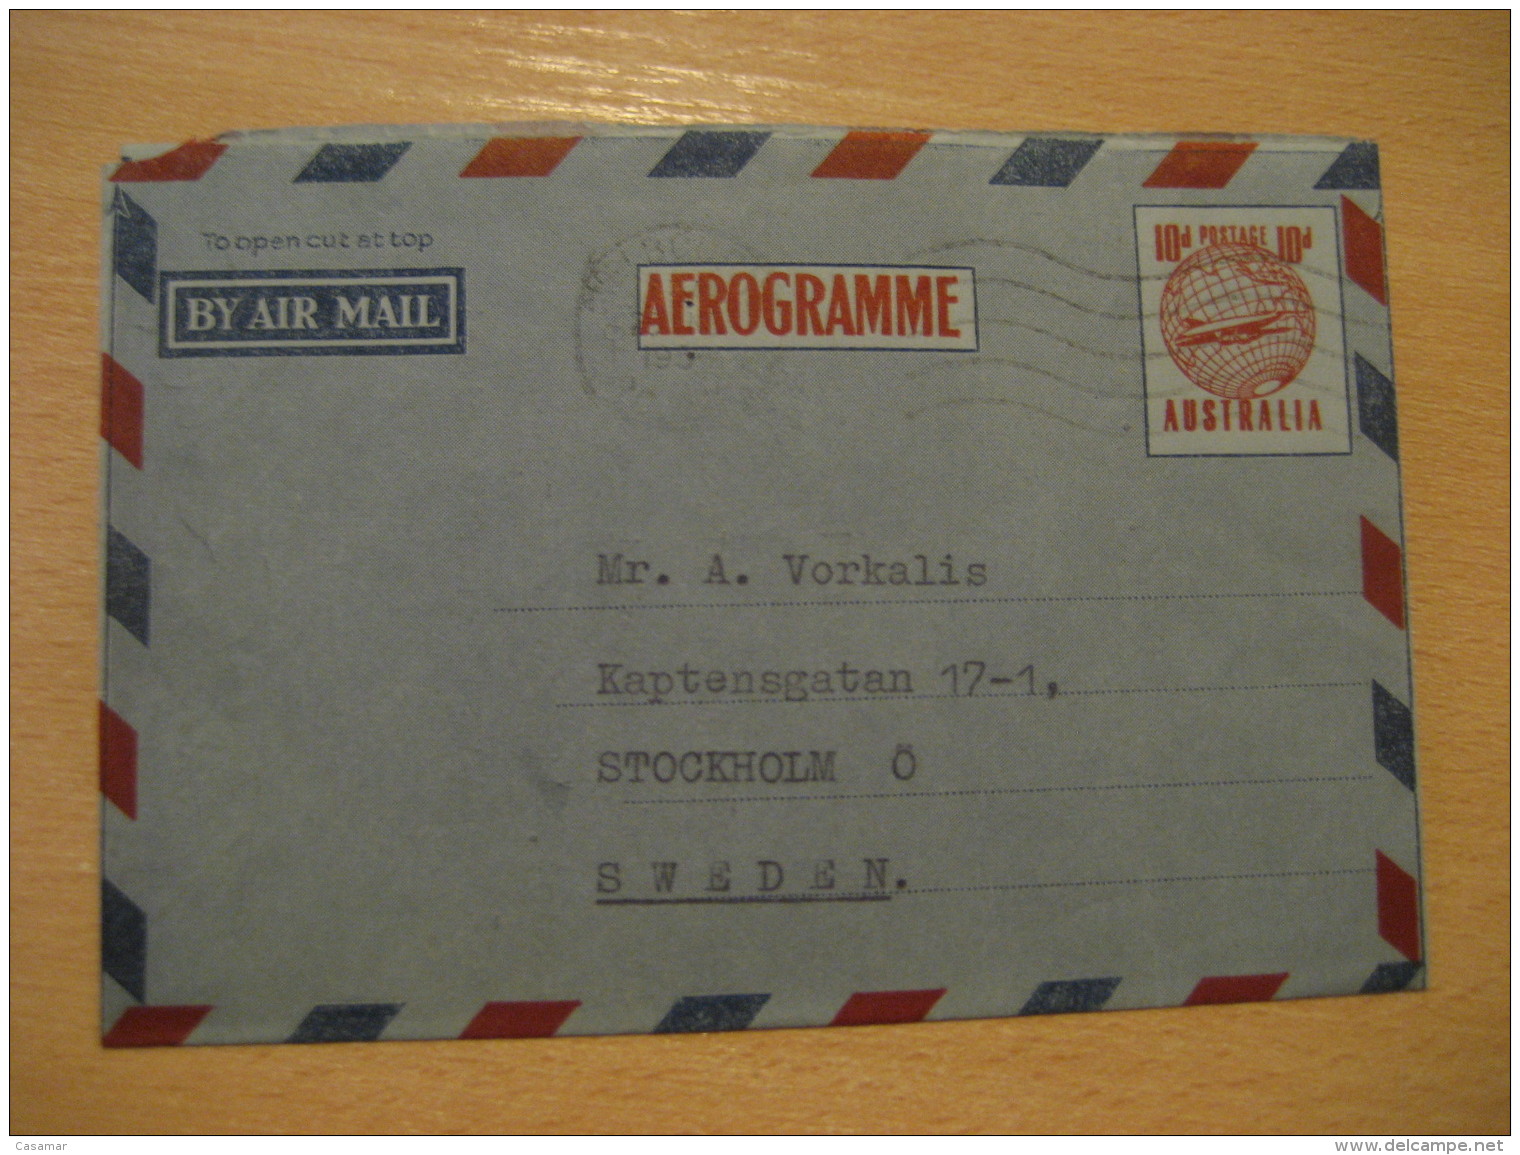 CAMBERWELL 1954 To Stockholm Sweden Aerogramme Air Mail AUSTRALIA - Aerograms